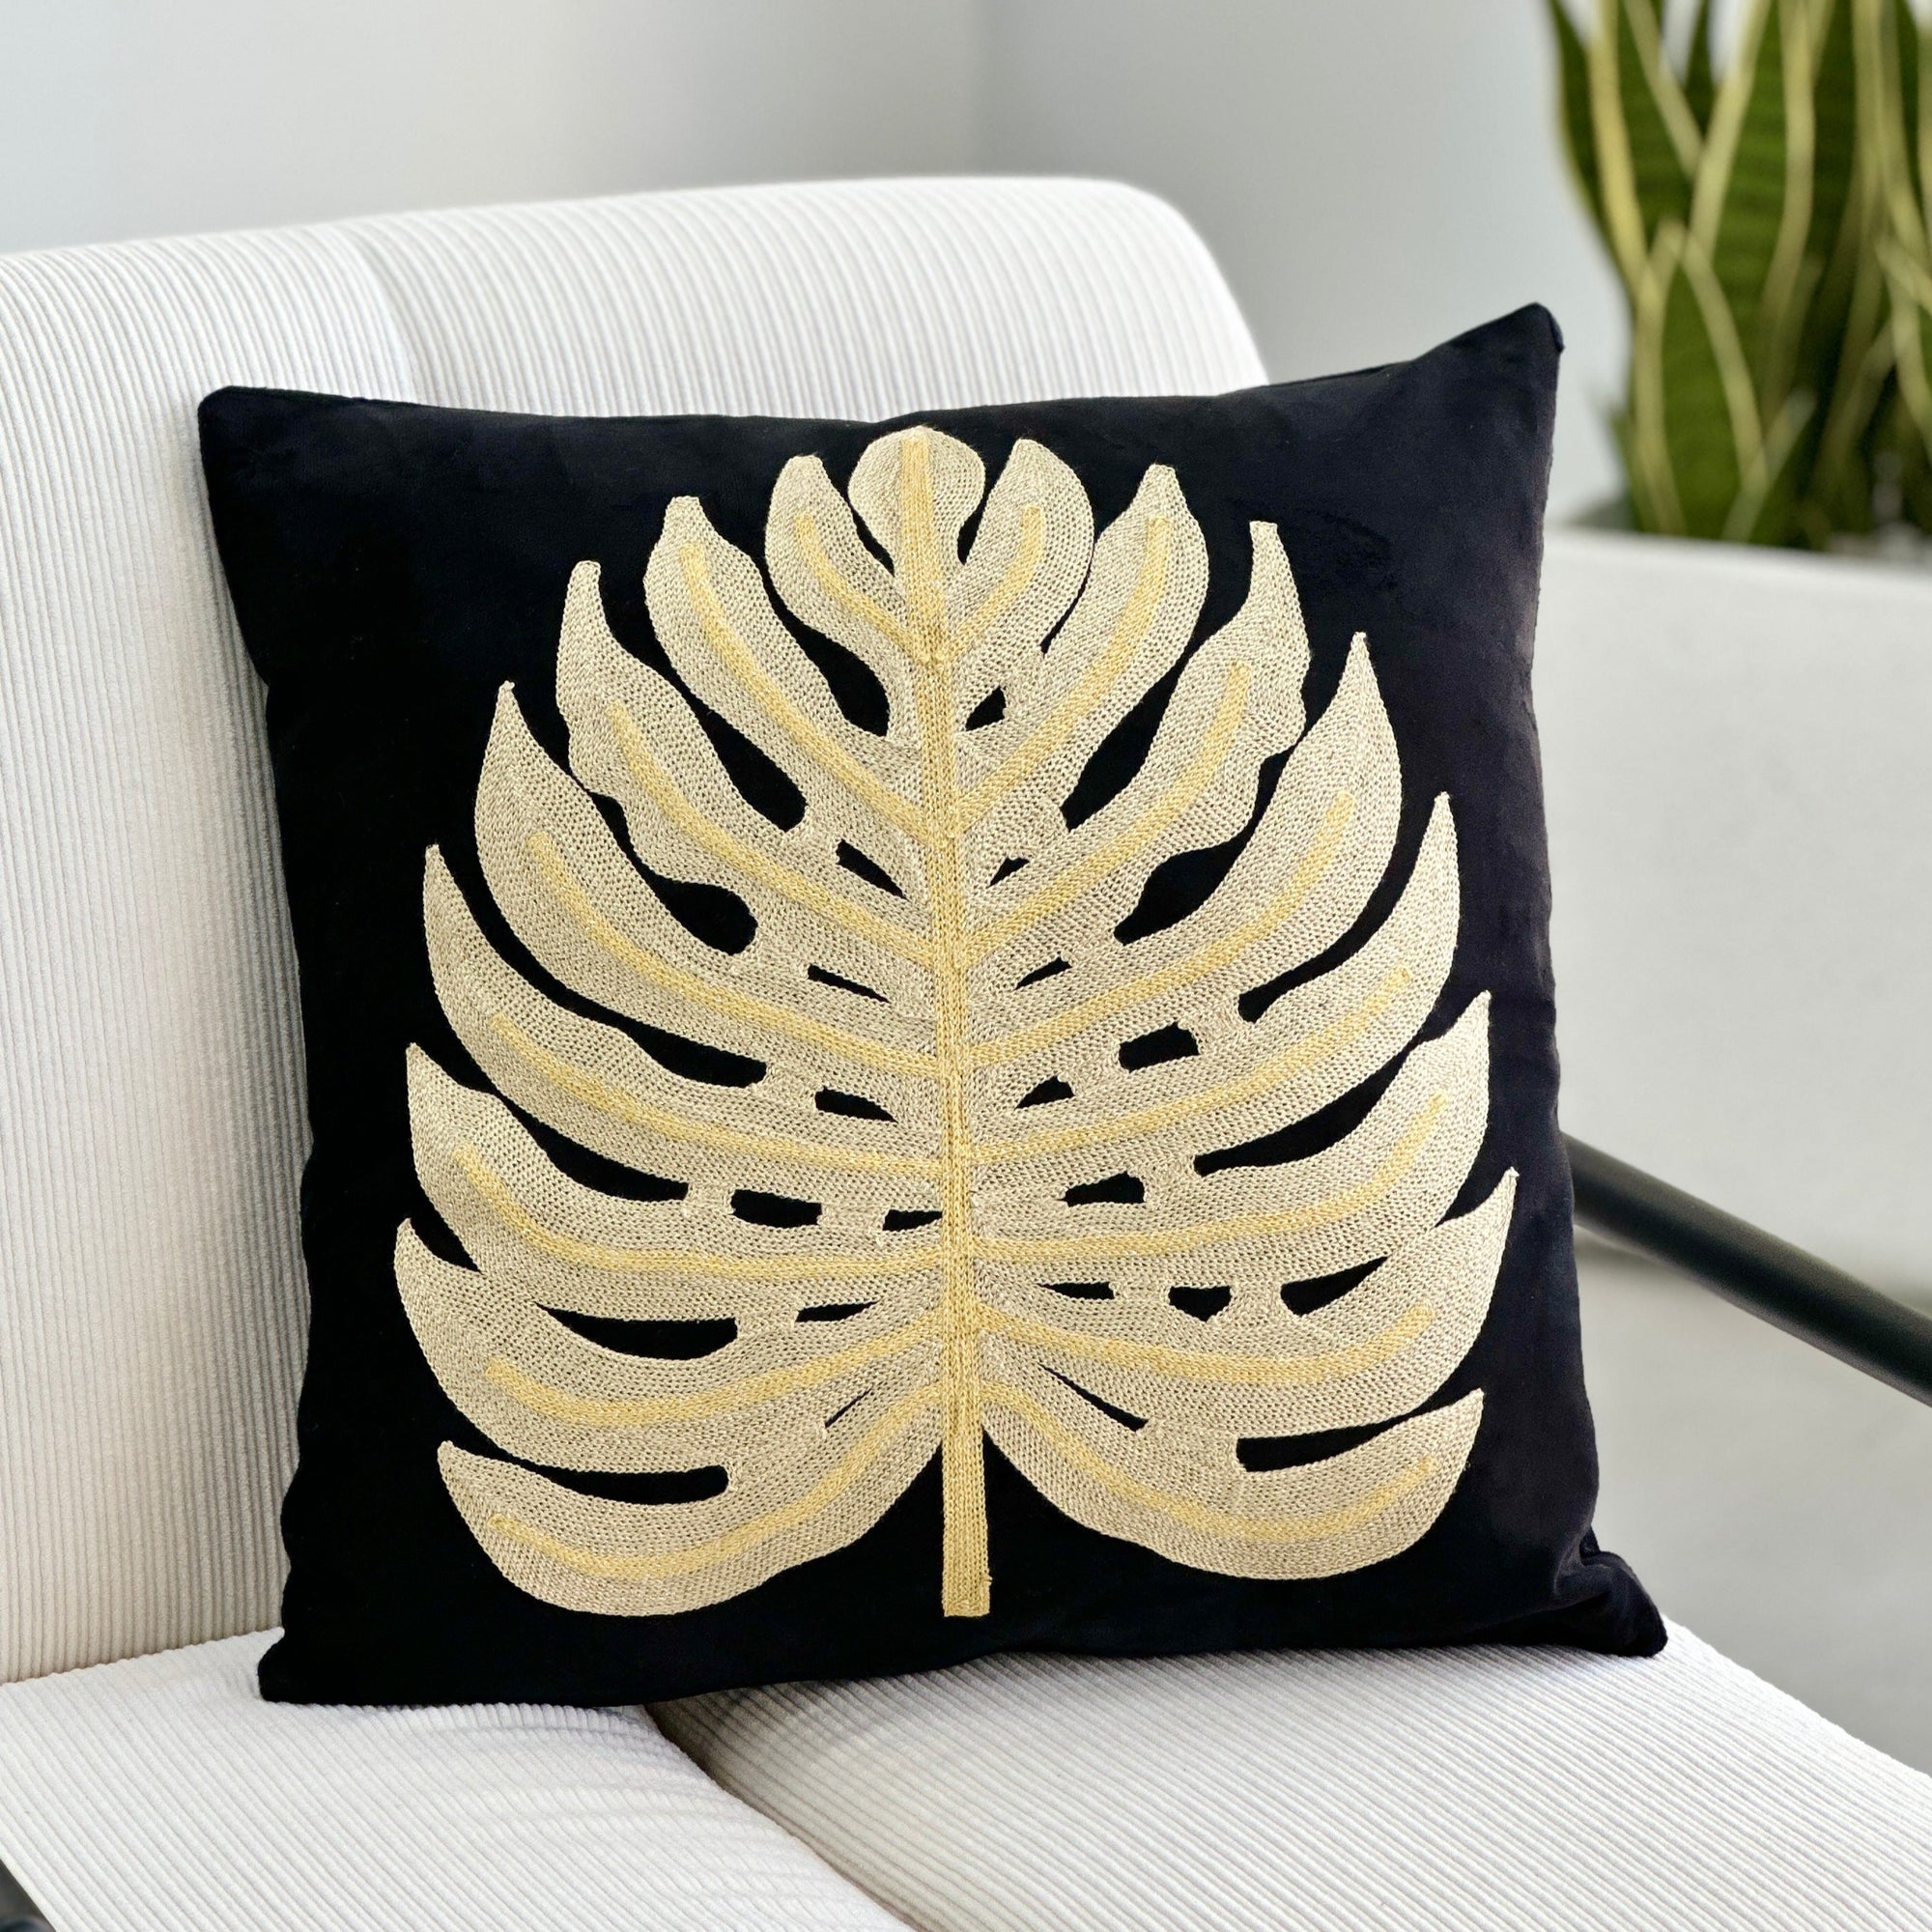 Embroidered Golden Leaf Black Pillow